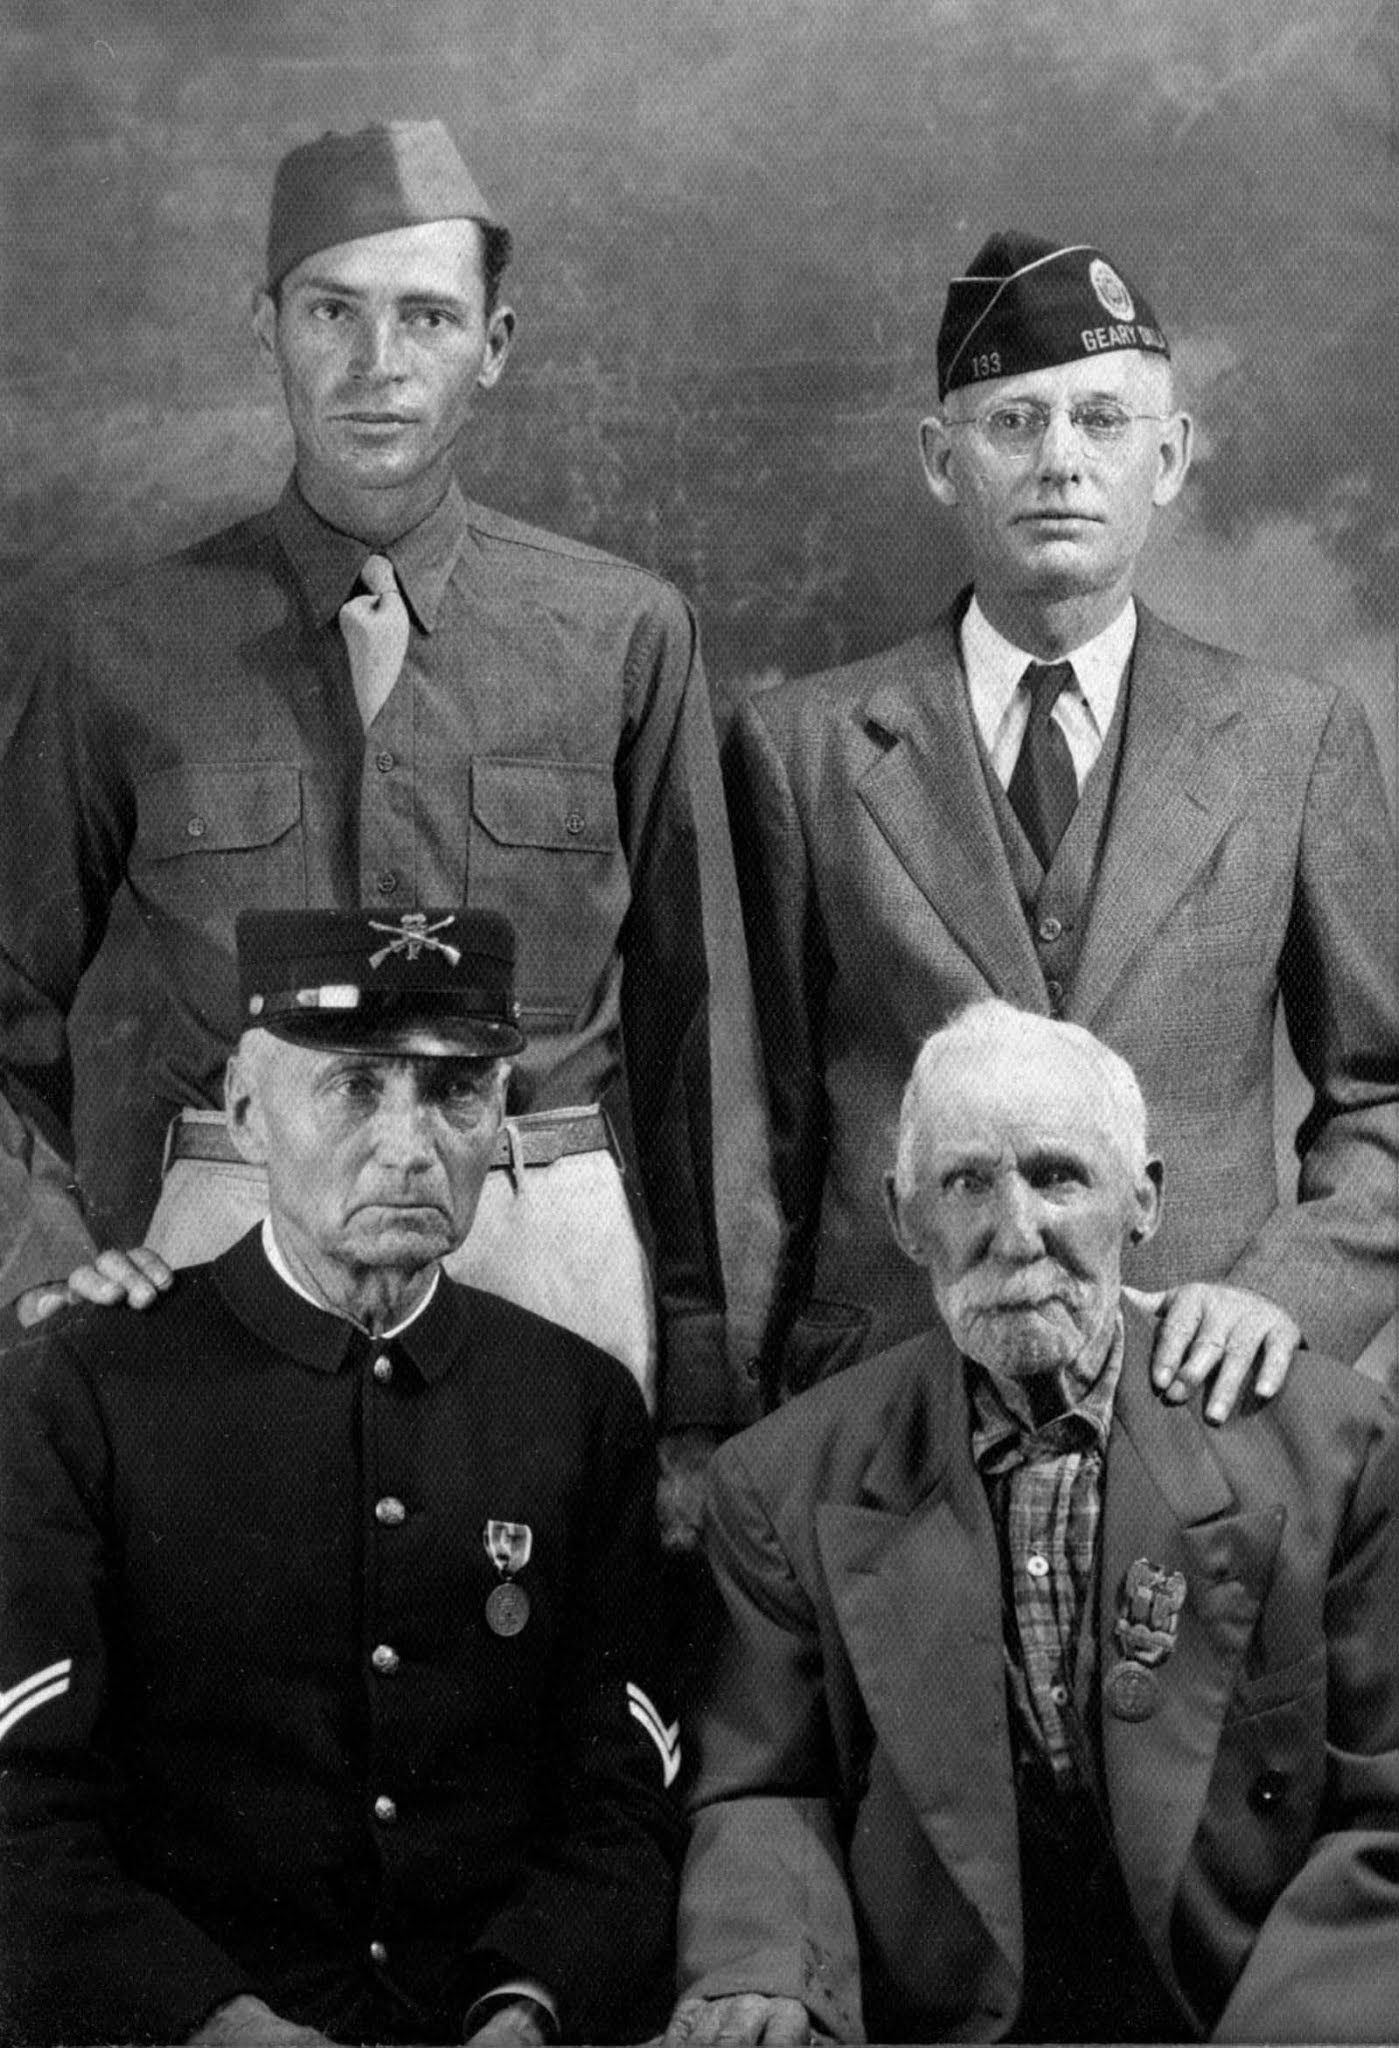 Vétérans de quatre guerres différentes de la même ville de Geary, Oklahoma, 1940